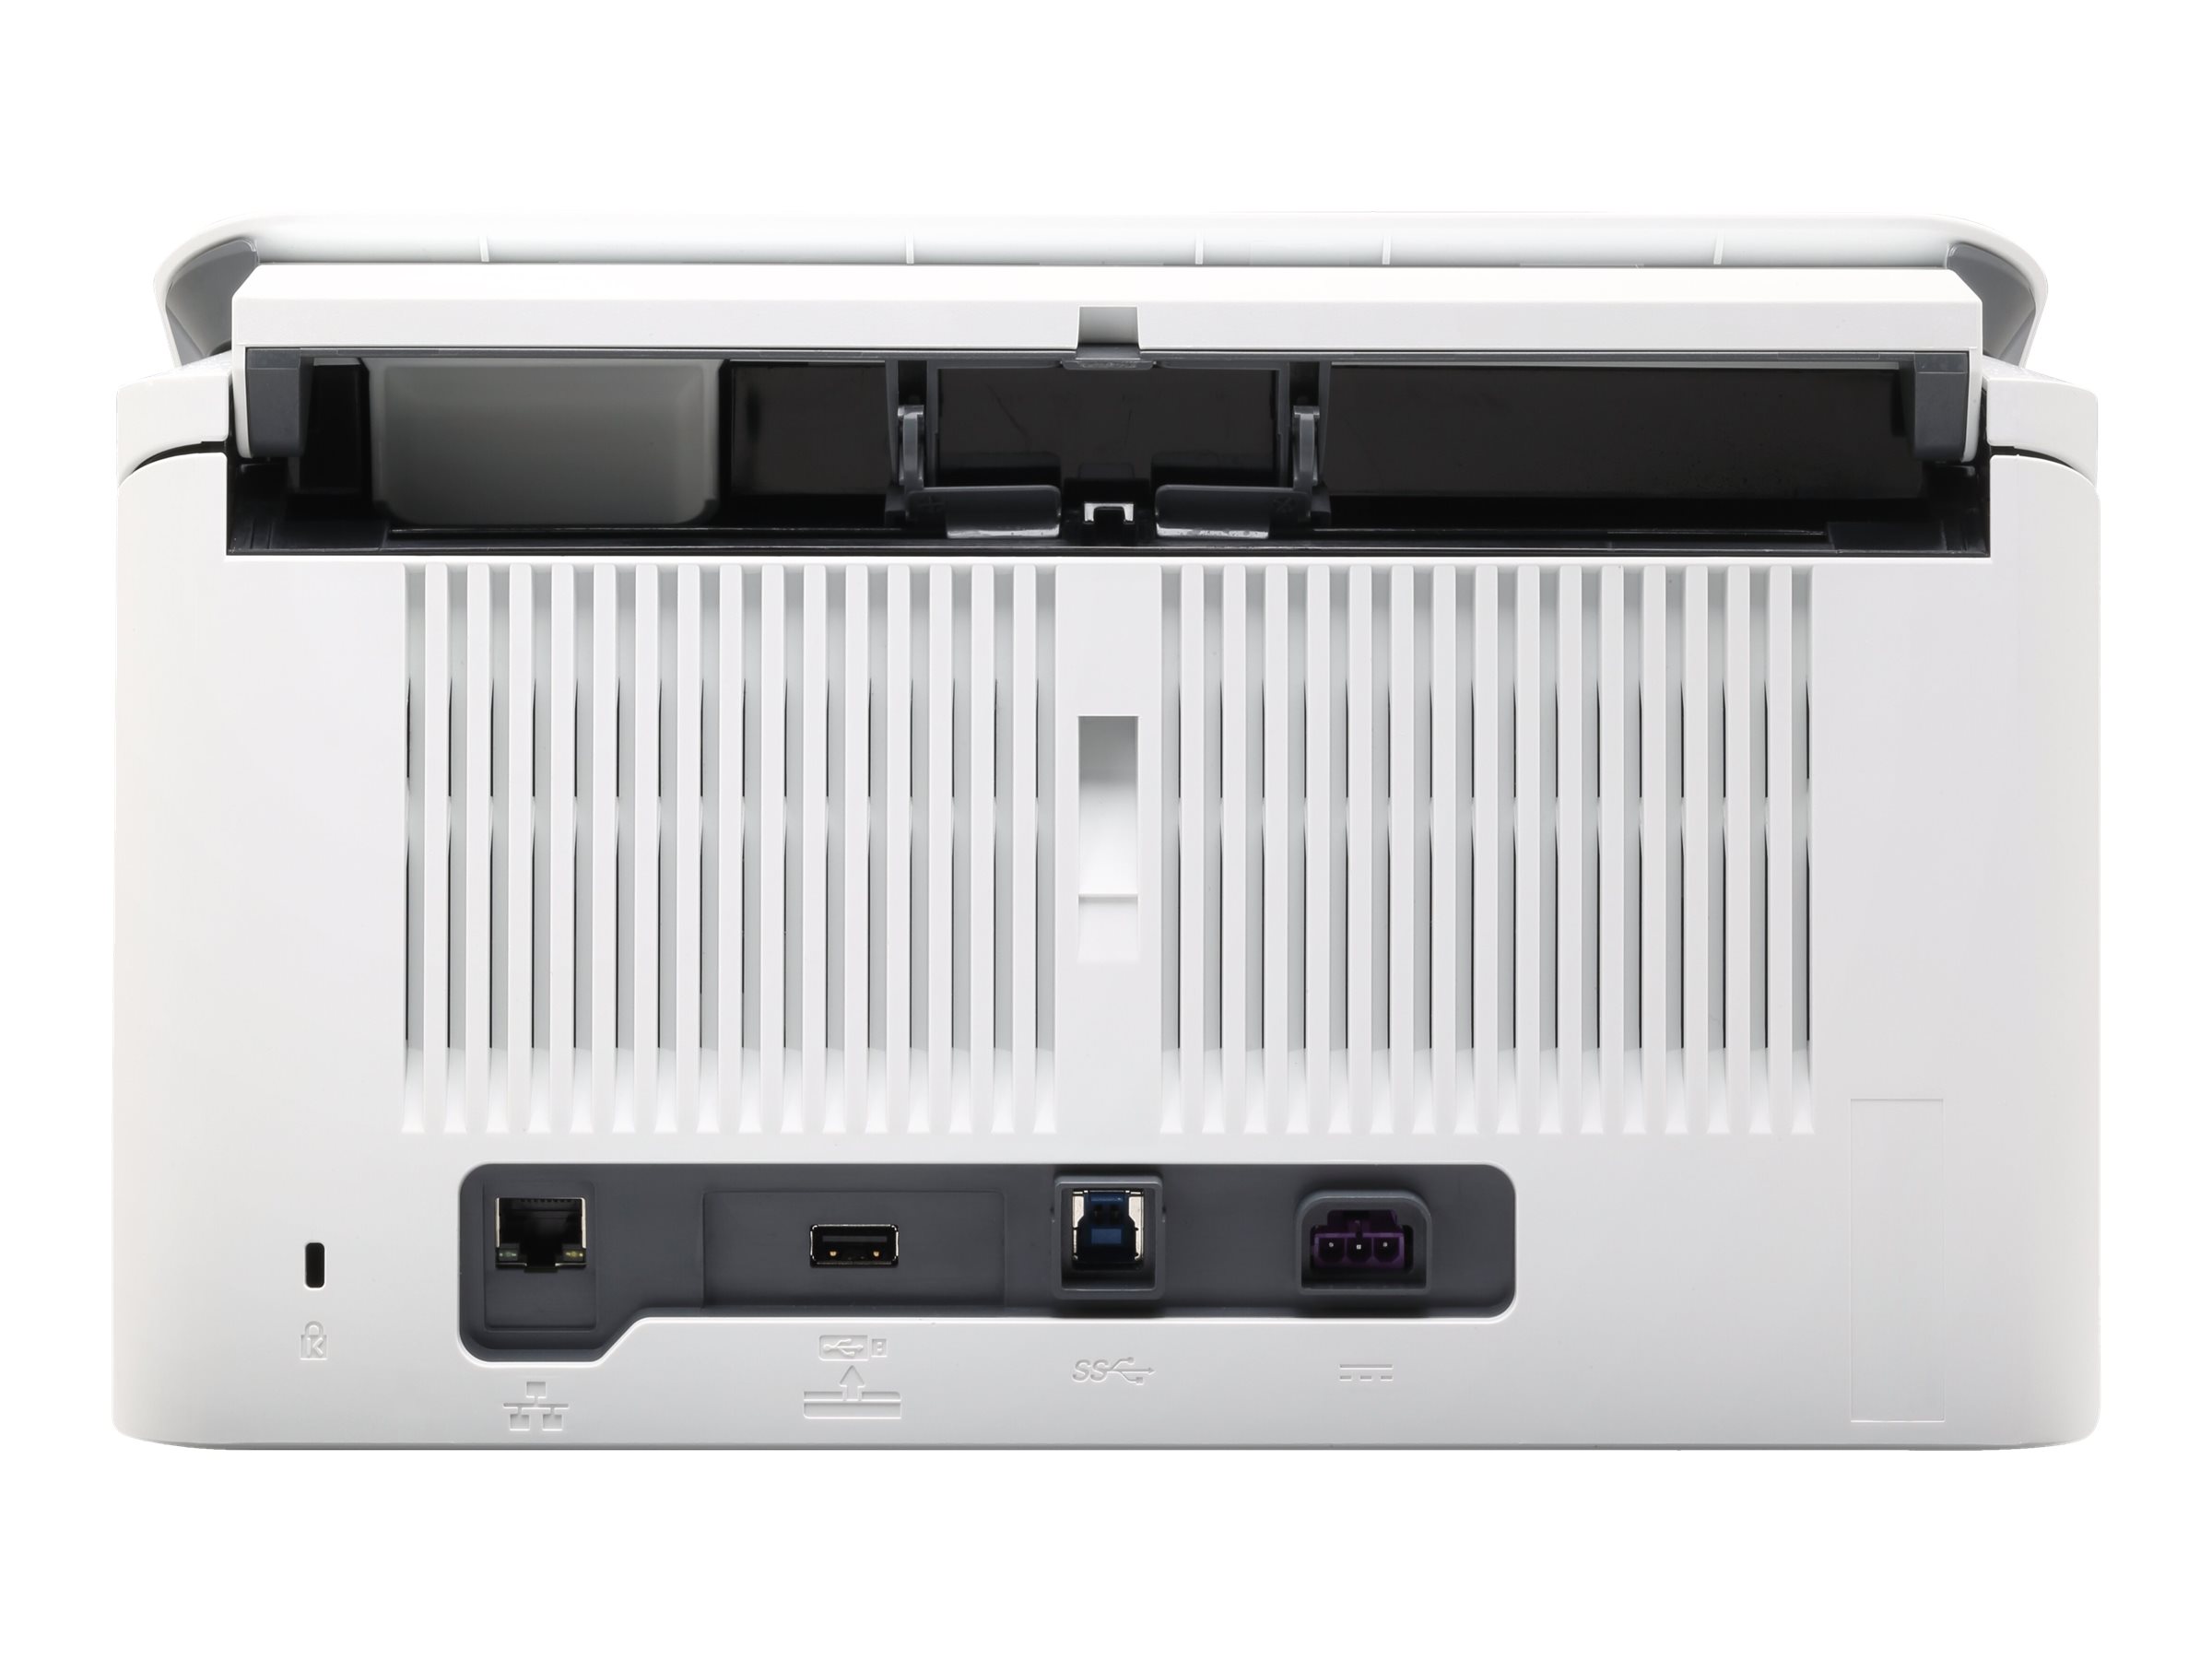 HP ScanJet Enterprise Flow N7000 snw1 - Scanner de documents - CMOS / CIS - Recto-verso - 216 x 3100 mm - 600 dpi x 600 dpi - jusqu'à 75 ppm (mono) / jusqu'à 75 ppm (couleur) - Chargeur automatique de documents (80 feuilles) - jusqu'à 7500 pages par jour - USB 3.0, LAN, Wi-Fi(n) - 6FW10A#B19 - Scanneurs de documents